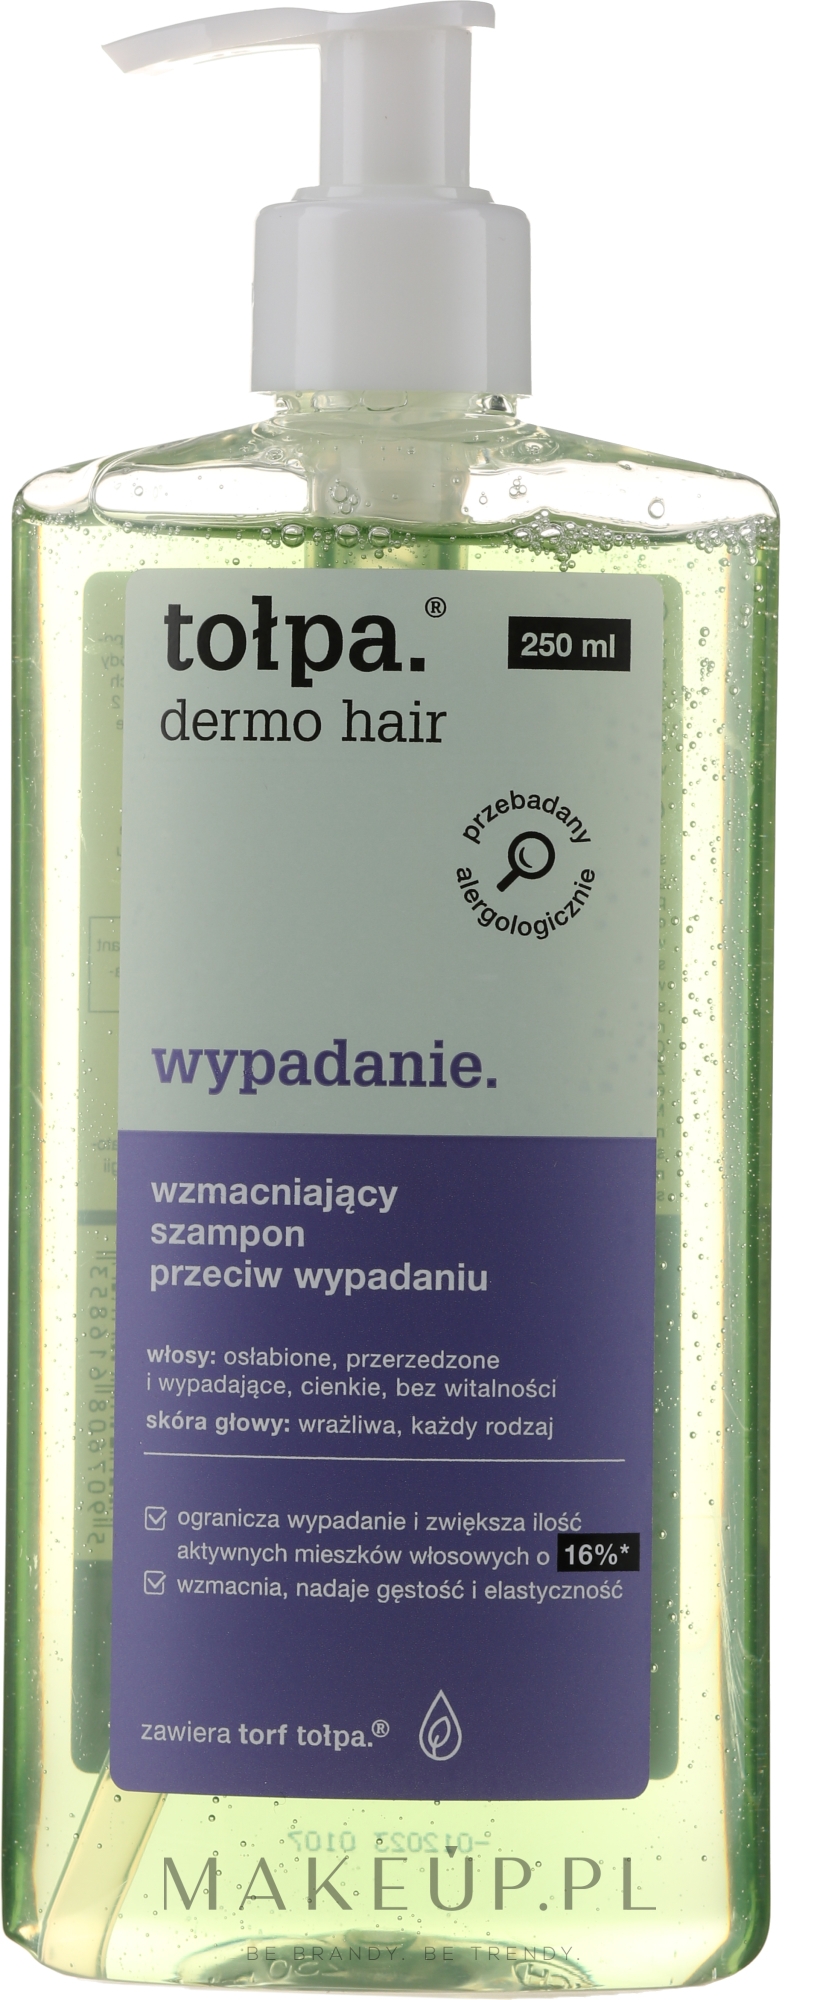 szampon przeciw wypadaniu derma hair